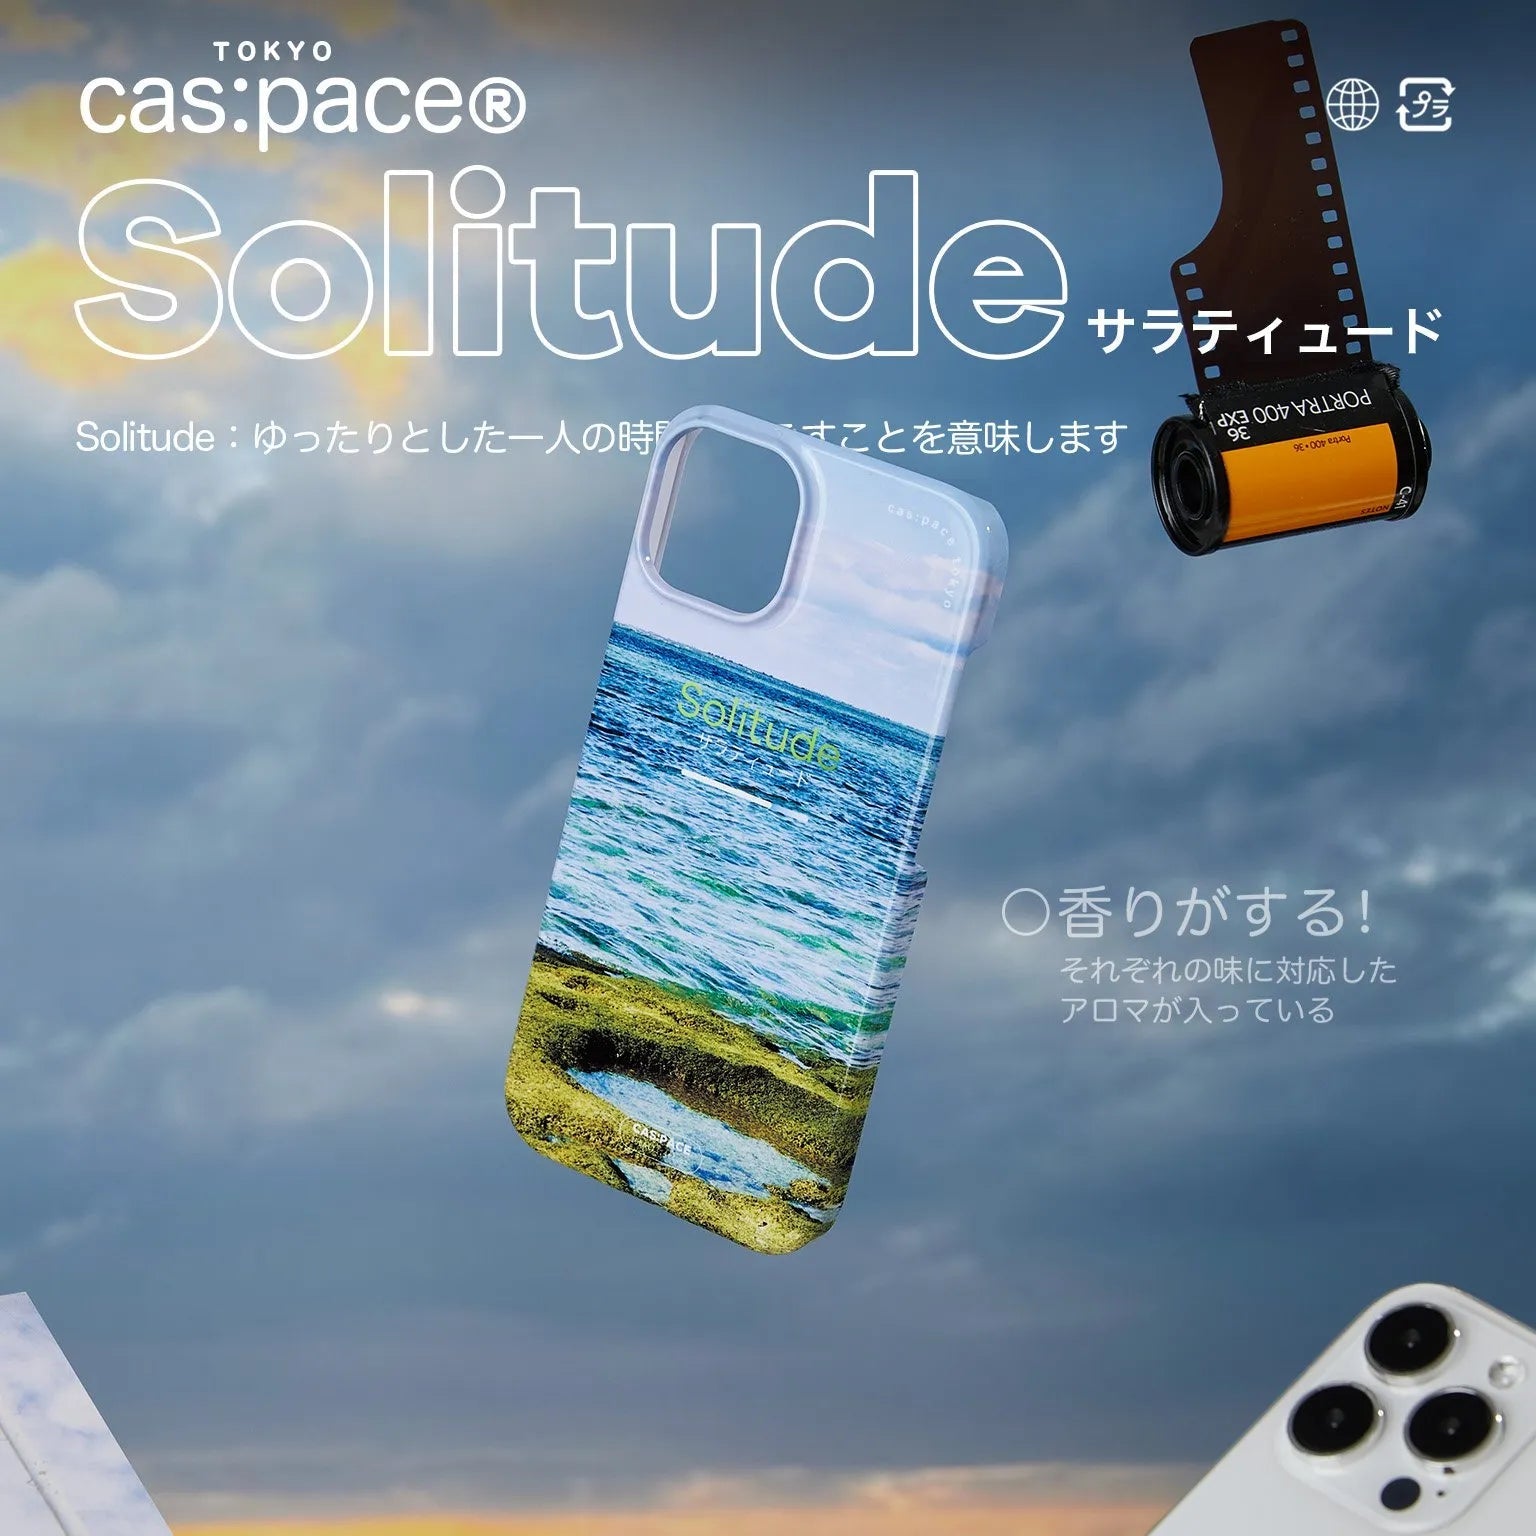 cas:pace 23S/S「Solitude」携帯ケース - cas:pace 殼空間